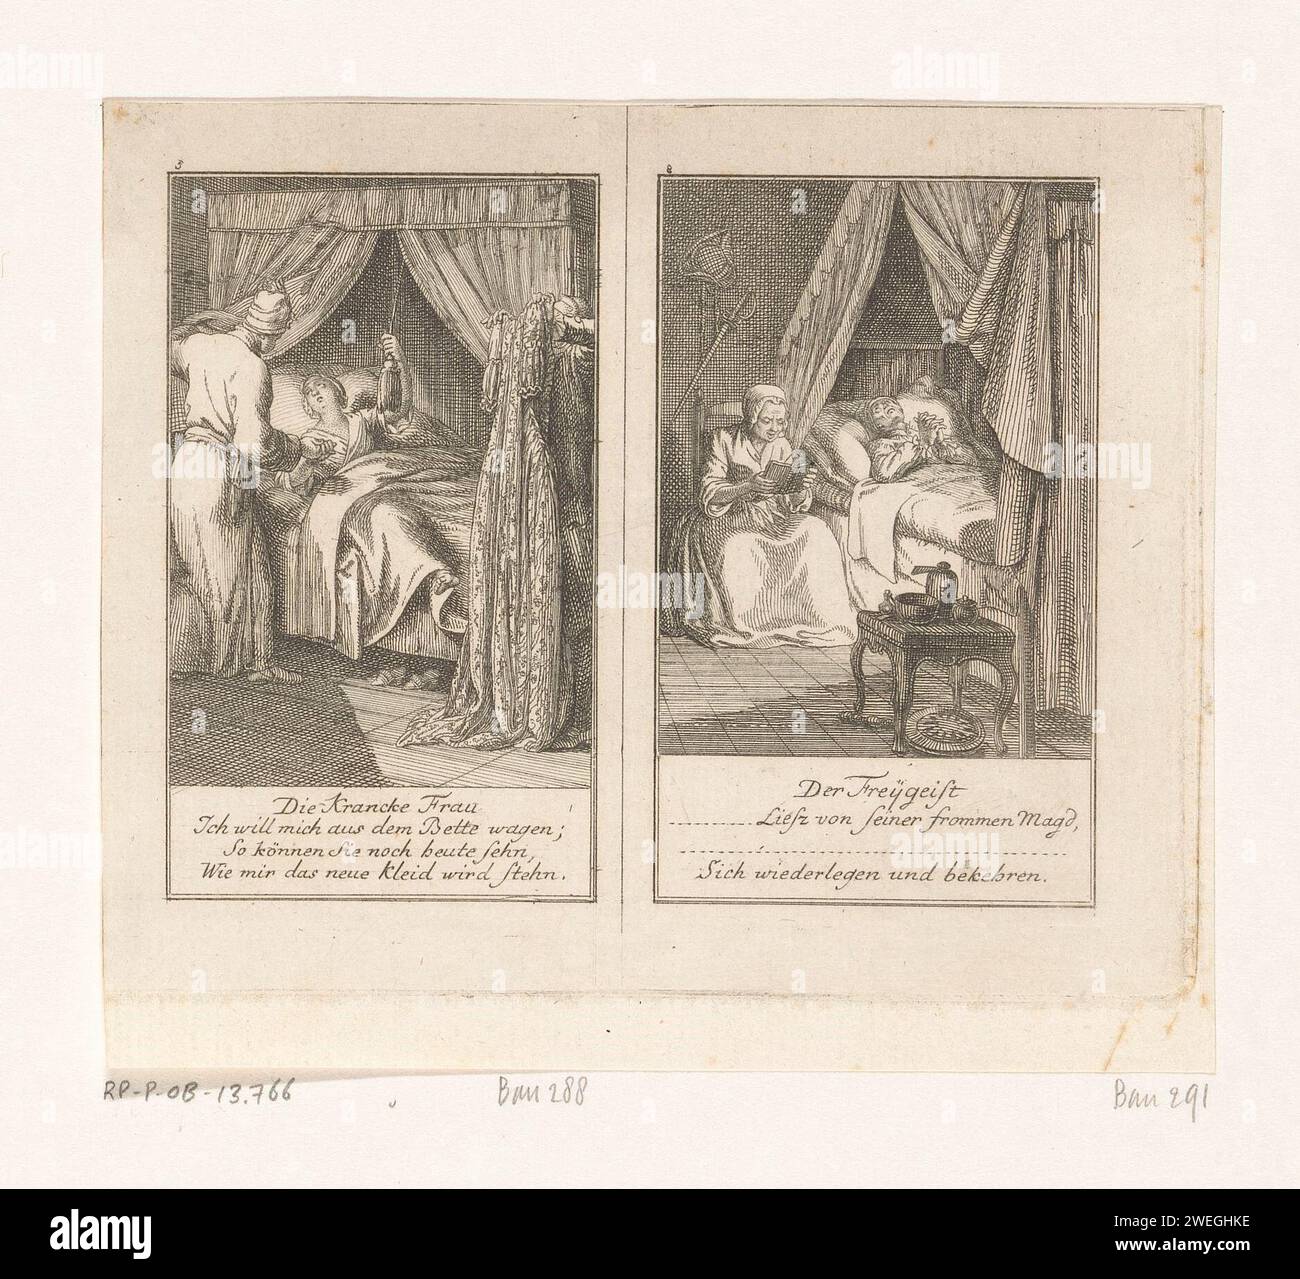 Zwei Szenen aus Gellert's Fabeln, Daniel Nikolaus Chodowiecki, 1776 Druck links, eine junge Frau ist anscheinend tot krank im Bett. Wenn der Schneider ein neues Kleid nimmt, fühlt sich die Frau plötzlich gut genug, es anzupassen. Rechts kann ein Atheist auf seinem Sterbebett von seiner Magd bekehrt werden. Nummeriert: 5 und 8. Literatur zum Ätzen von Papier. Krankenbett. Kleid, Kleid. Sterbebett. Konvertierung und Überzeugung. Zimmermädchen und Hausangestellte Stockfoto